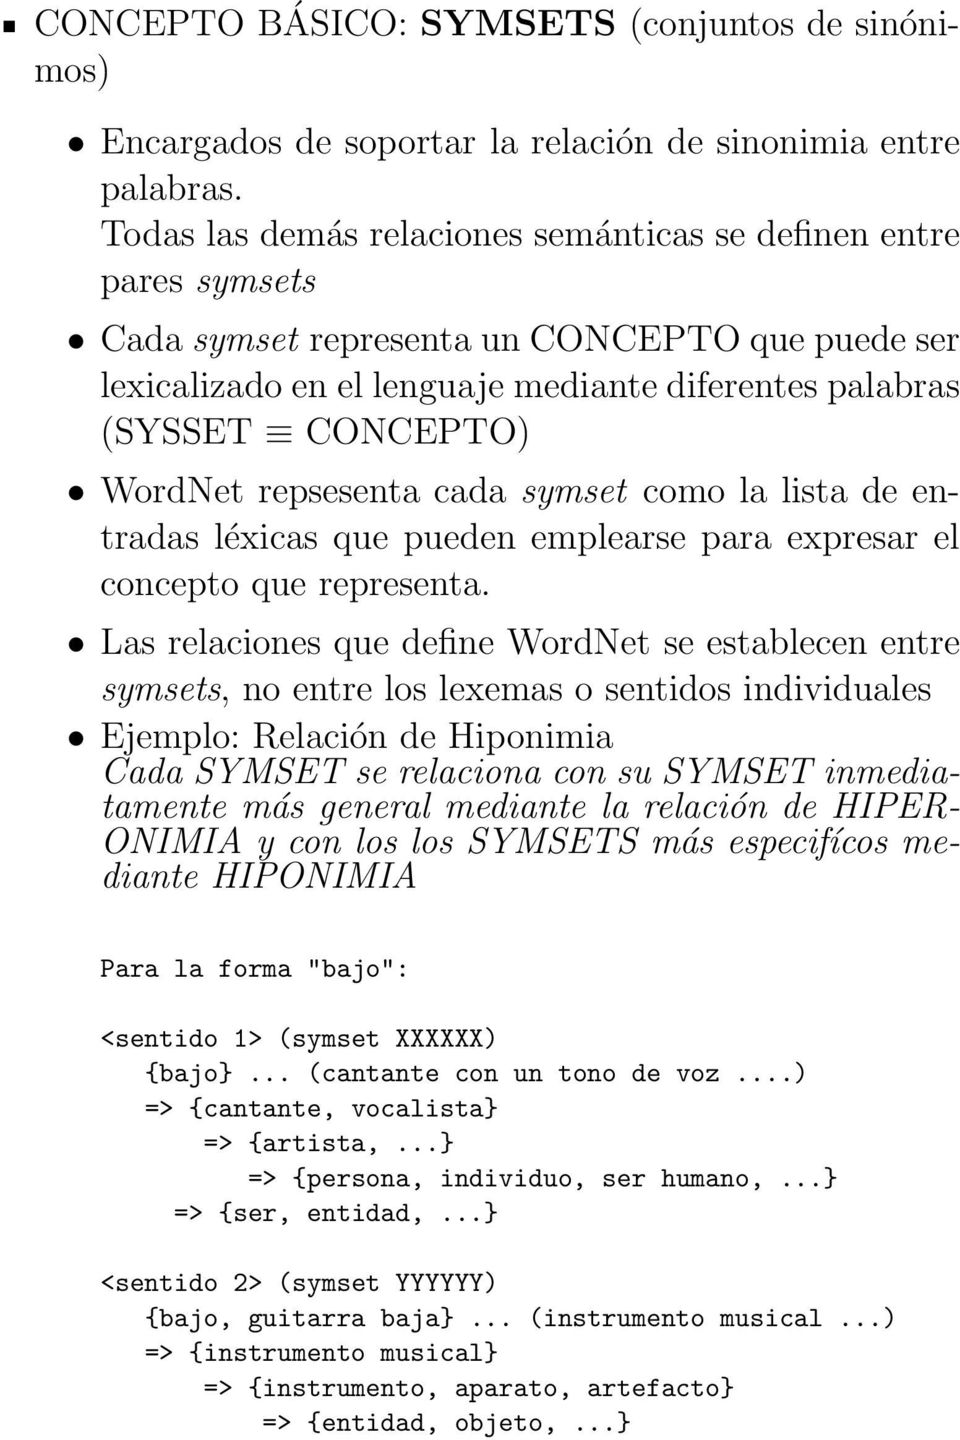 WordNet repsesenta cada symset como la lista de entradas léxicas que pueden emplearse para expresar el concepto que representa.